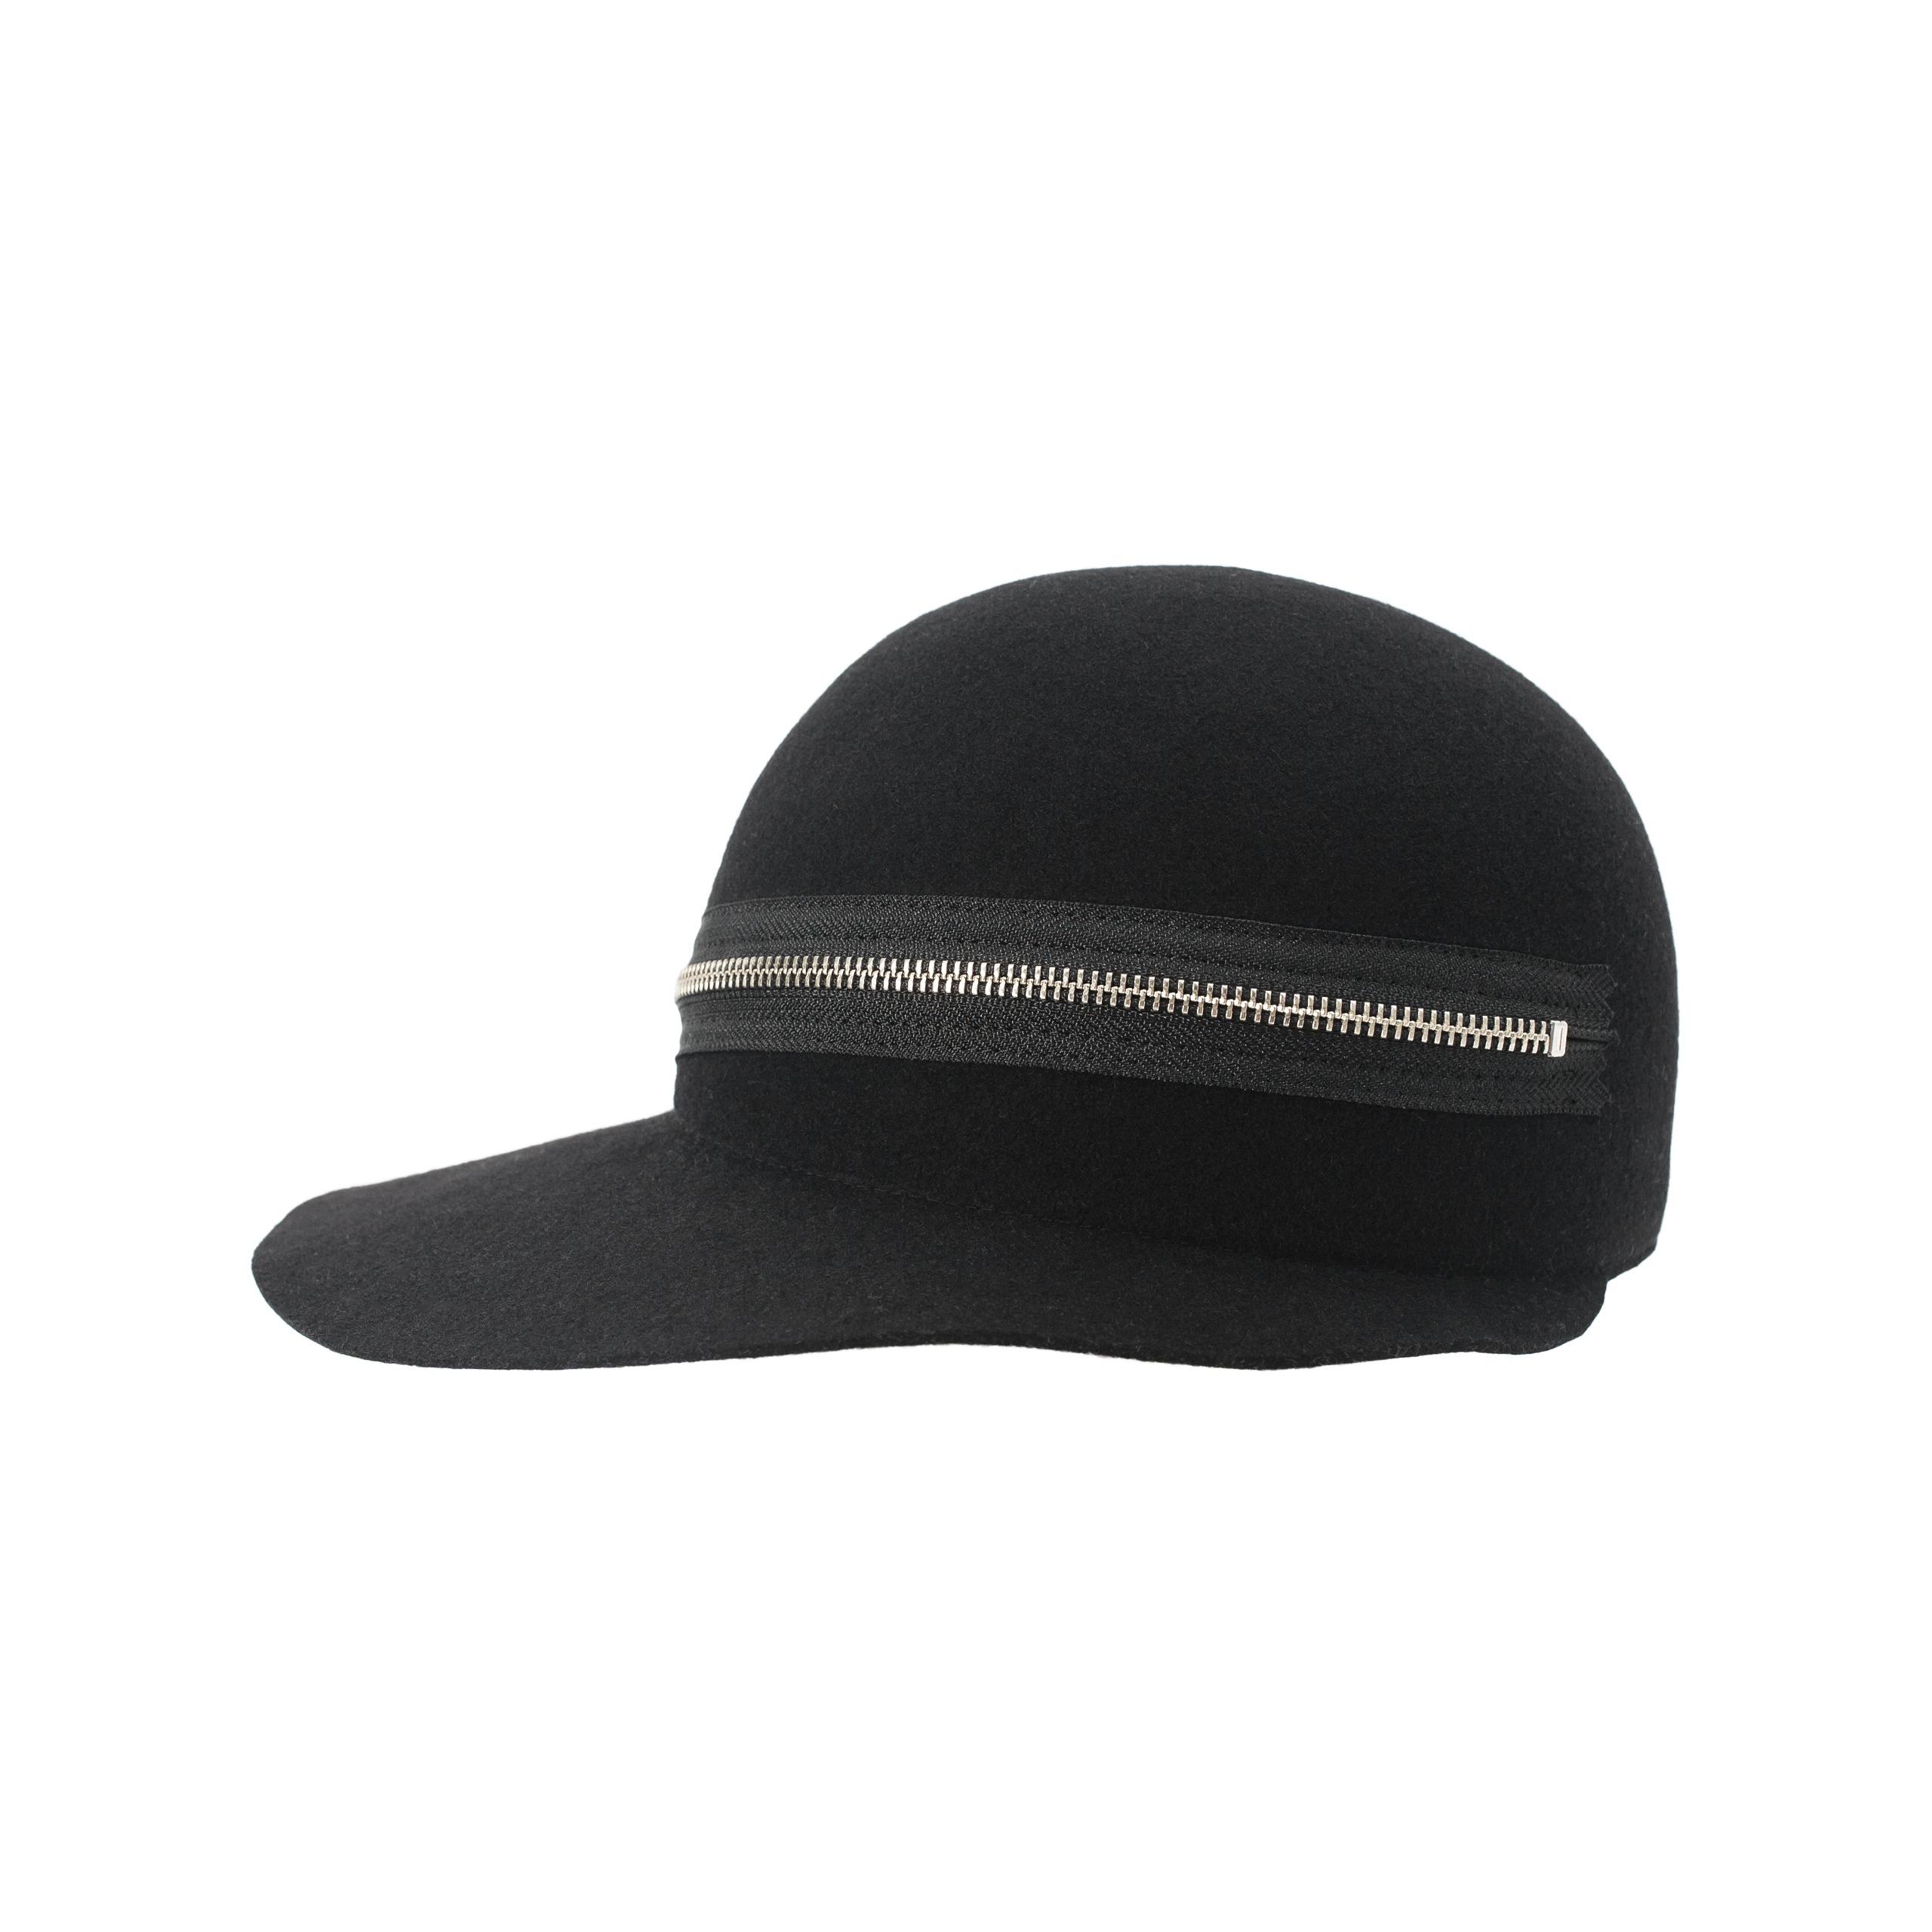 BLACK WOOL CAP - 4